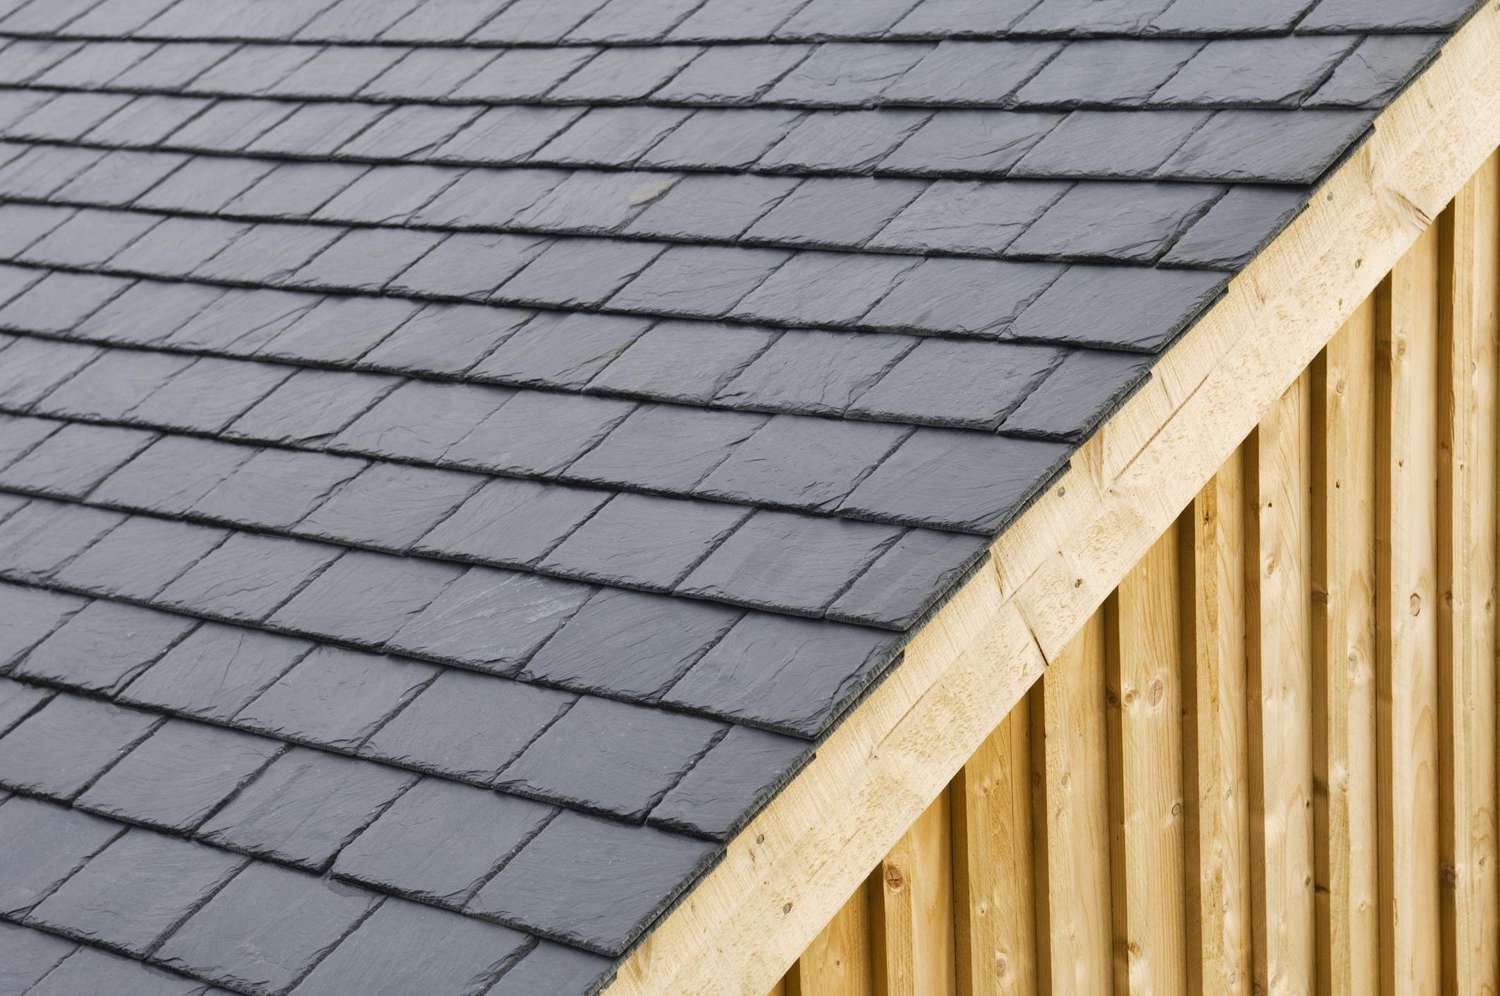 Roofing tiles - slate